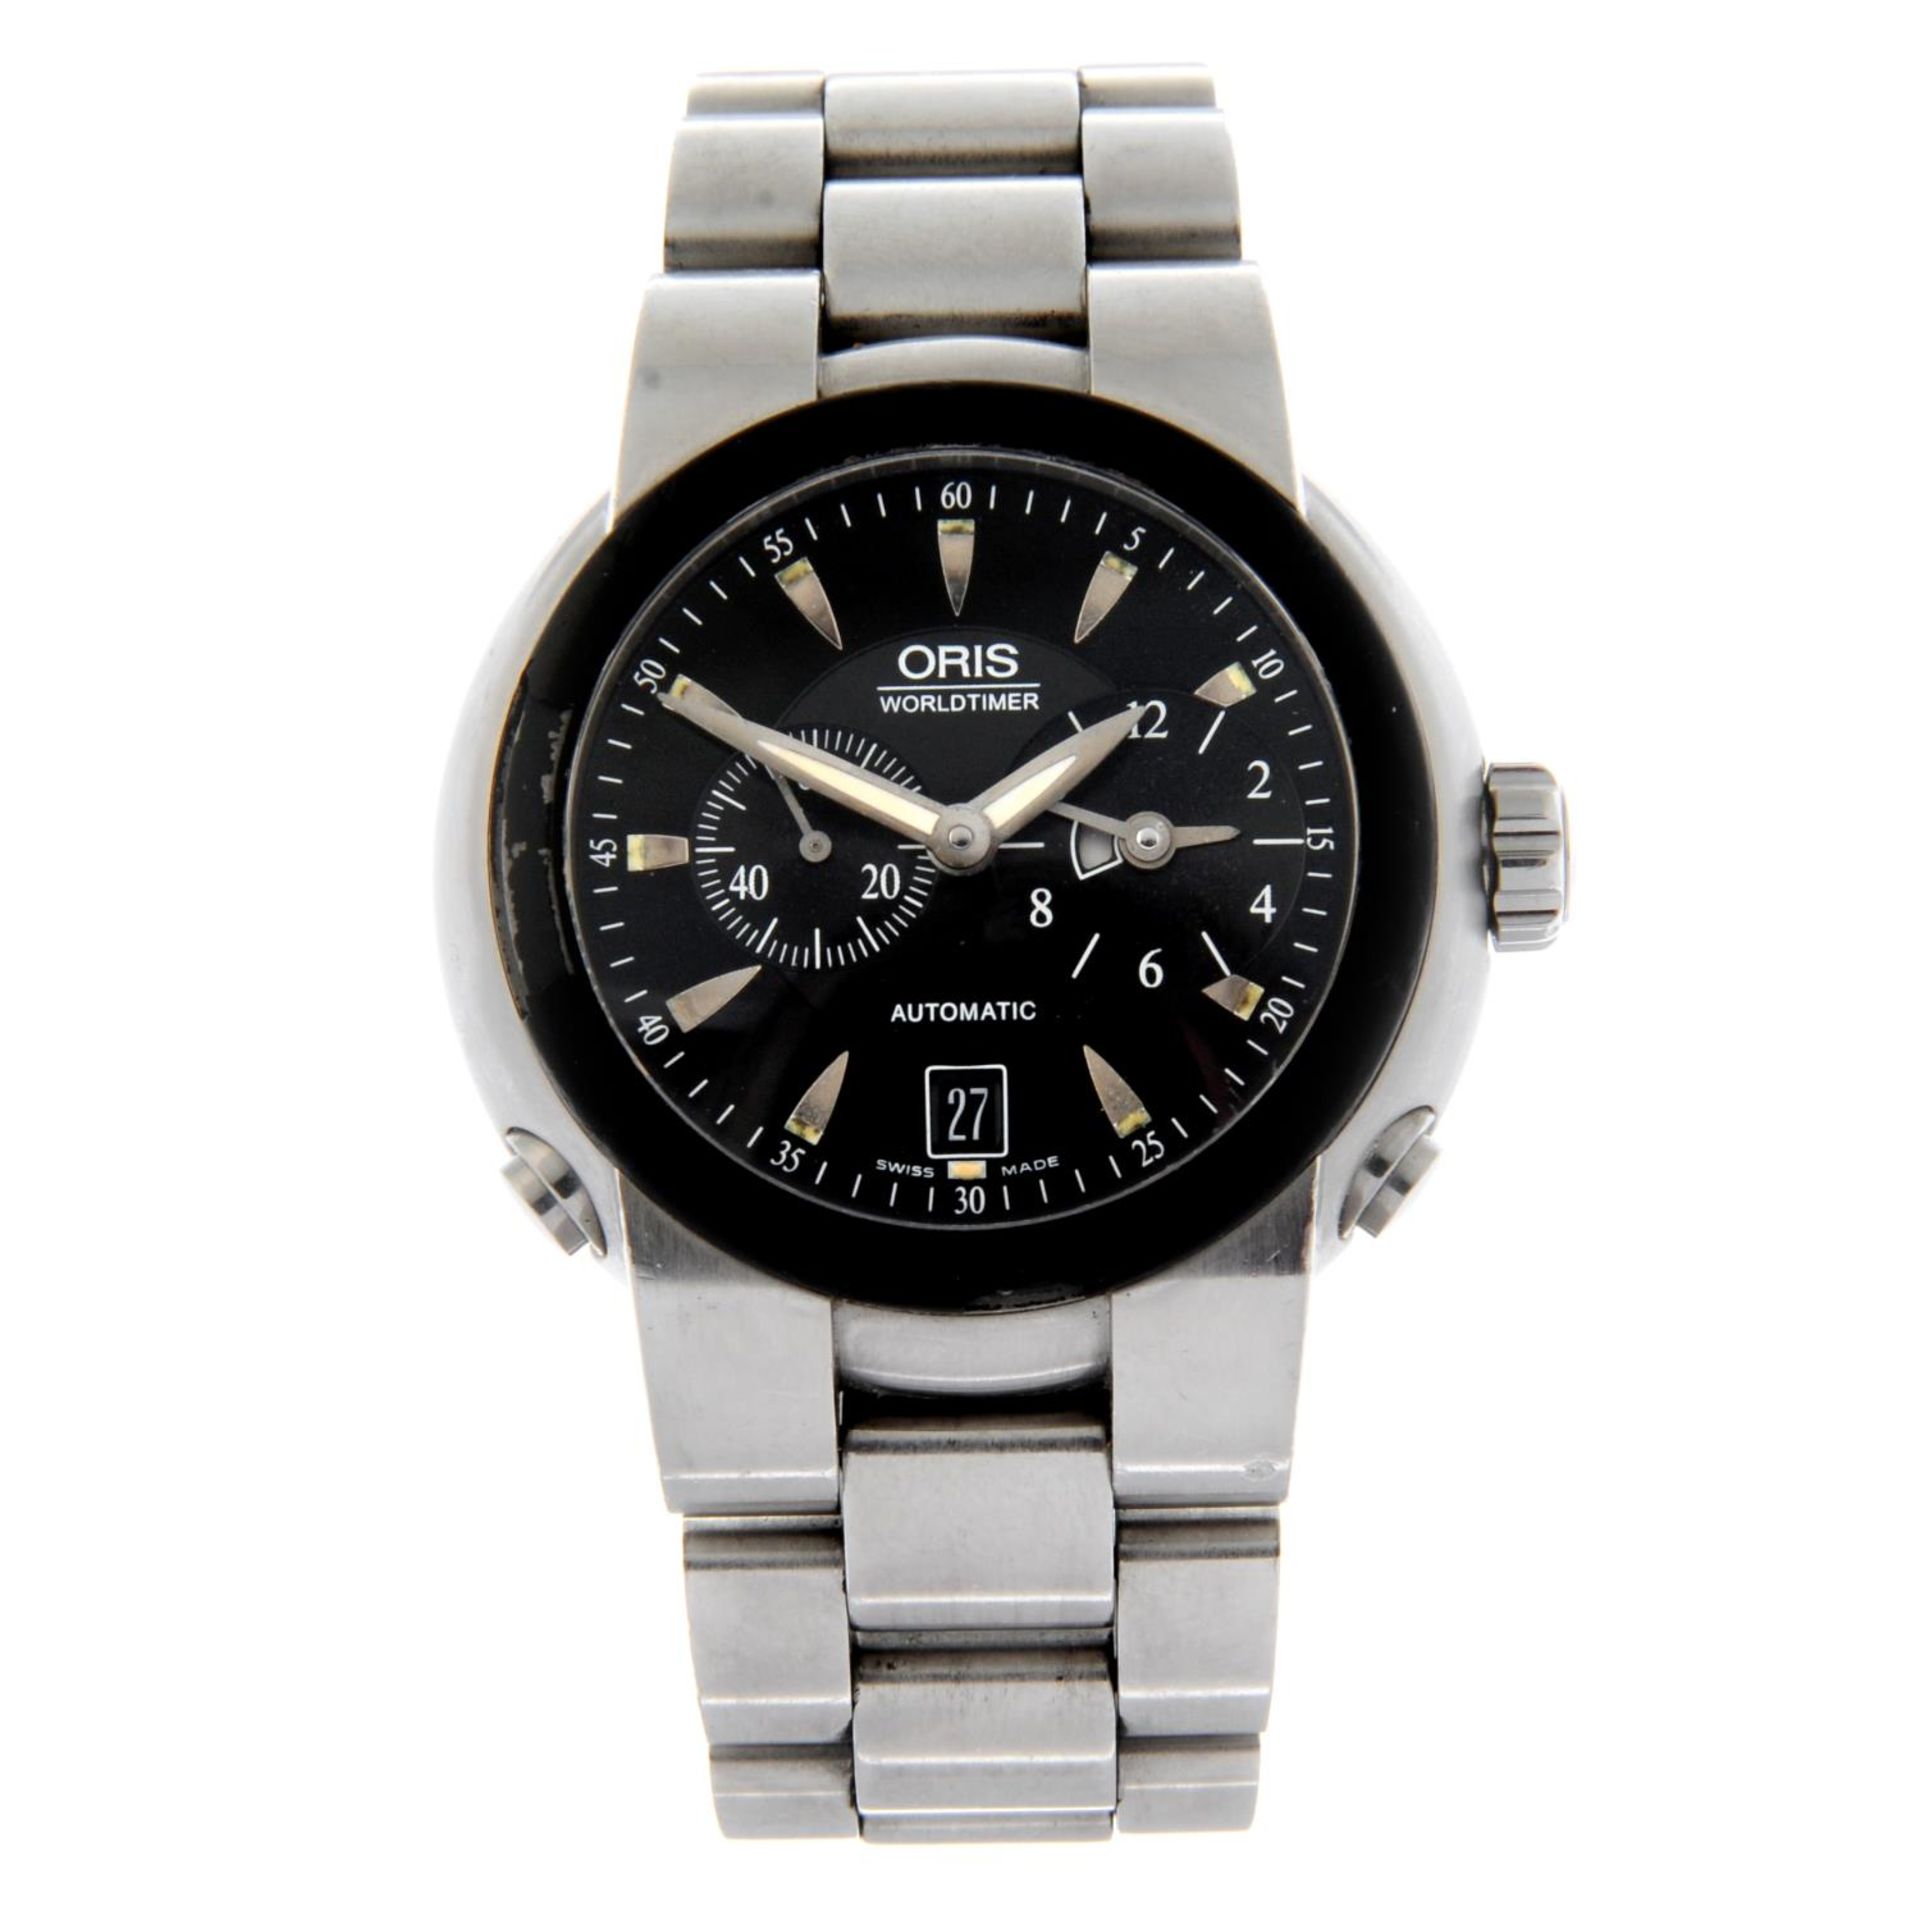 ORIS - a TT1 Worldtimer bracelet watch.